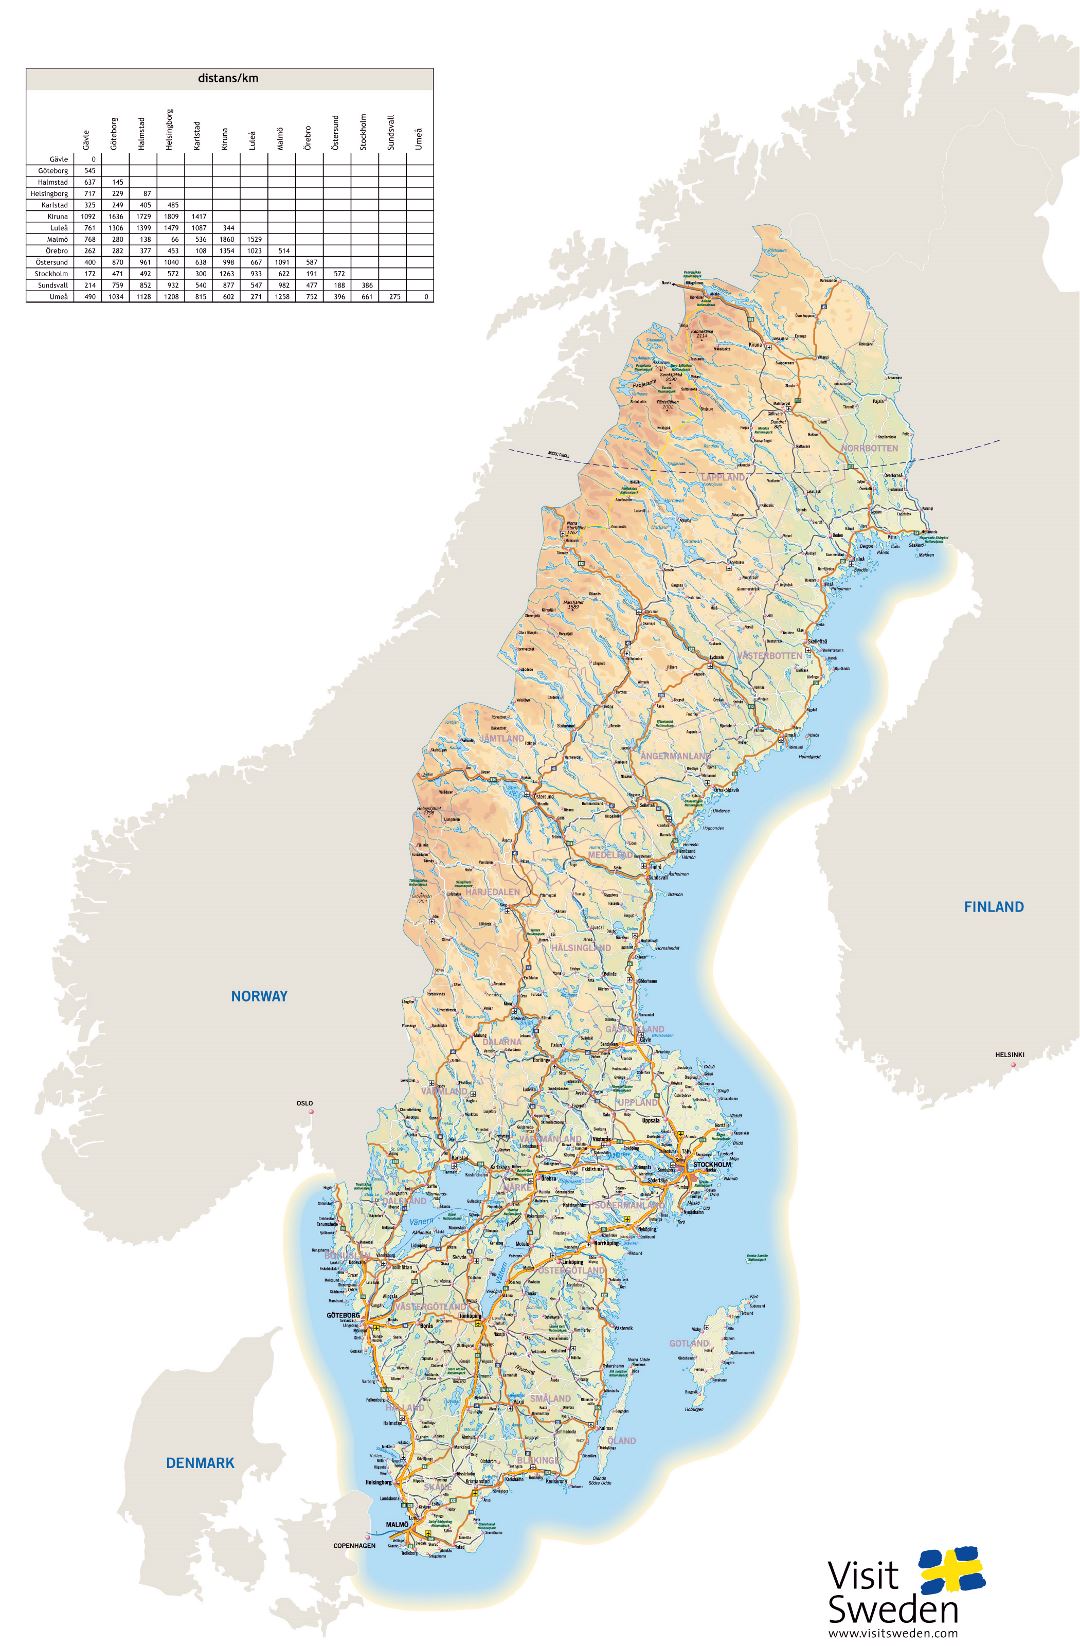 Большая детальная карта высот Швеции с автомагистралями, городами и аэропортами